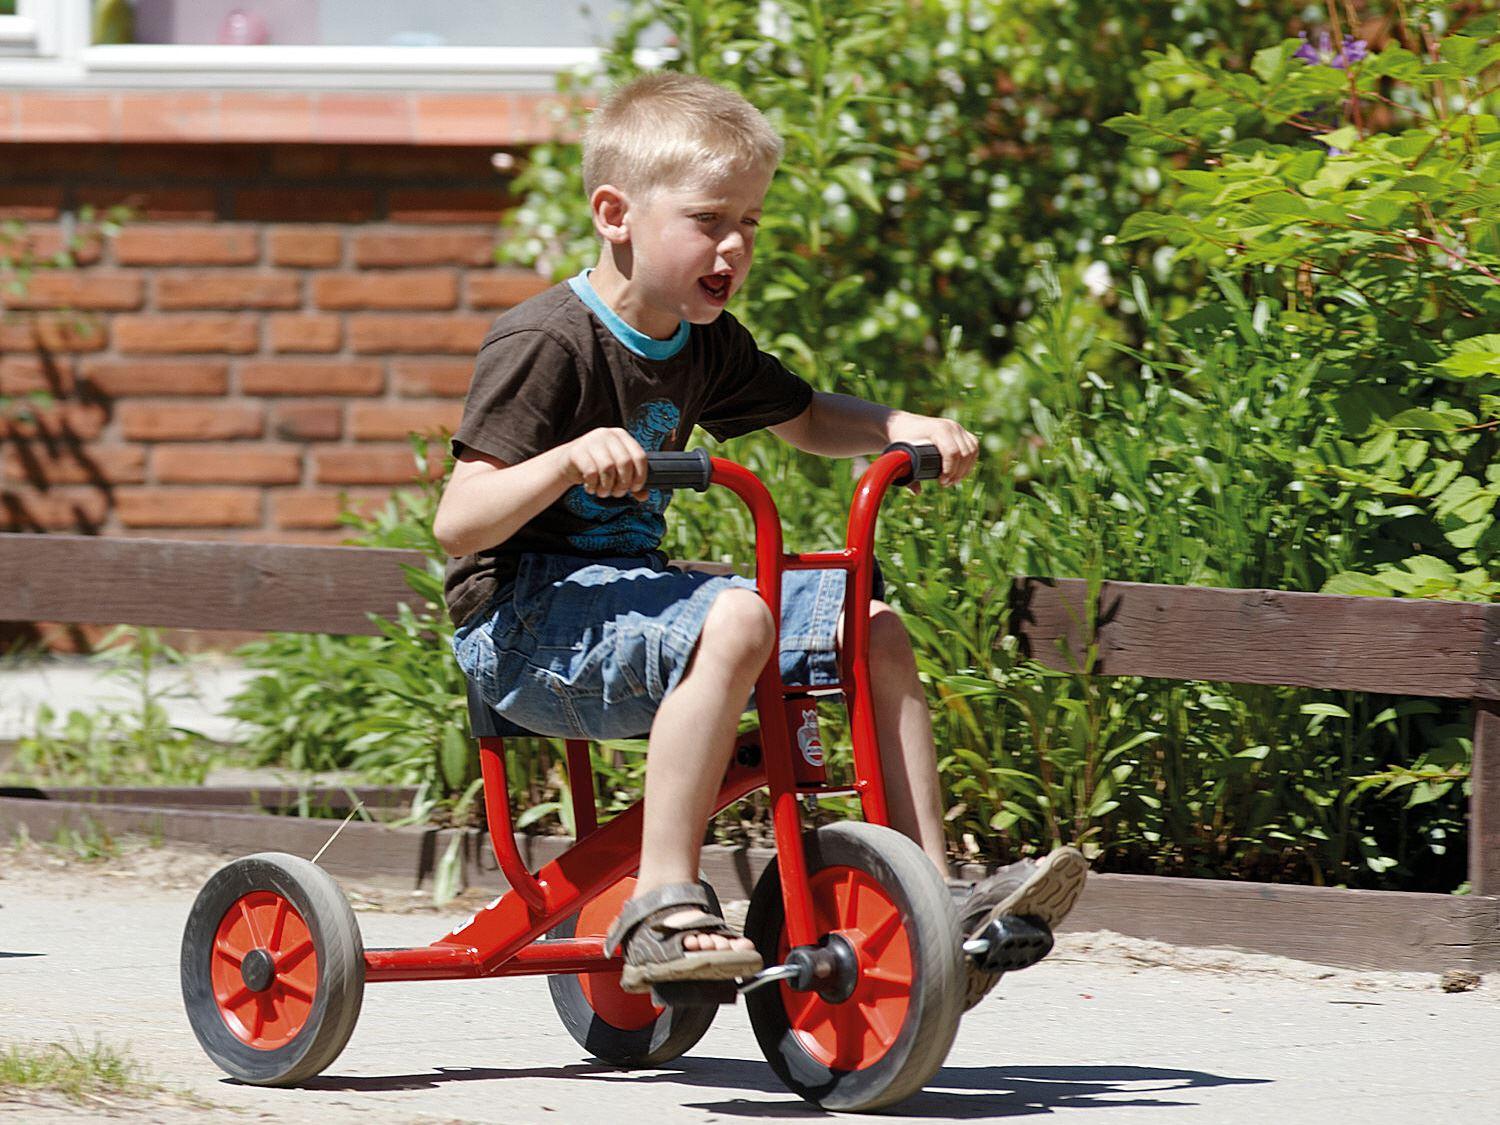 Dreirad mittel Aktion - Winther Viking - Kinderfahrzeug für Kitas und andere Institutionen